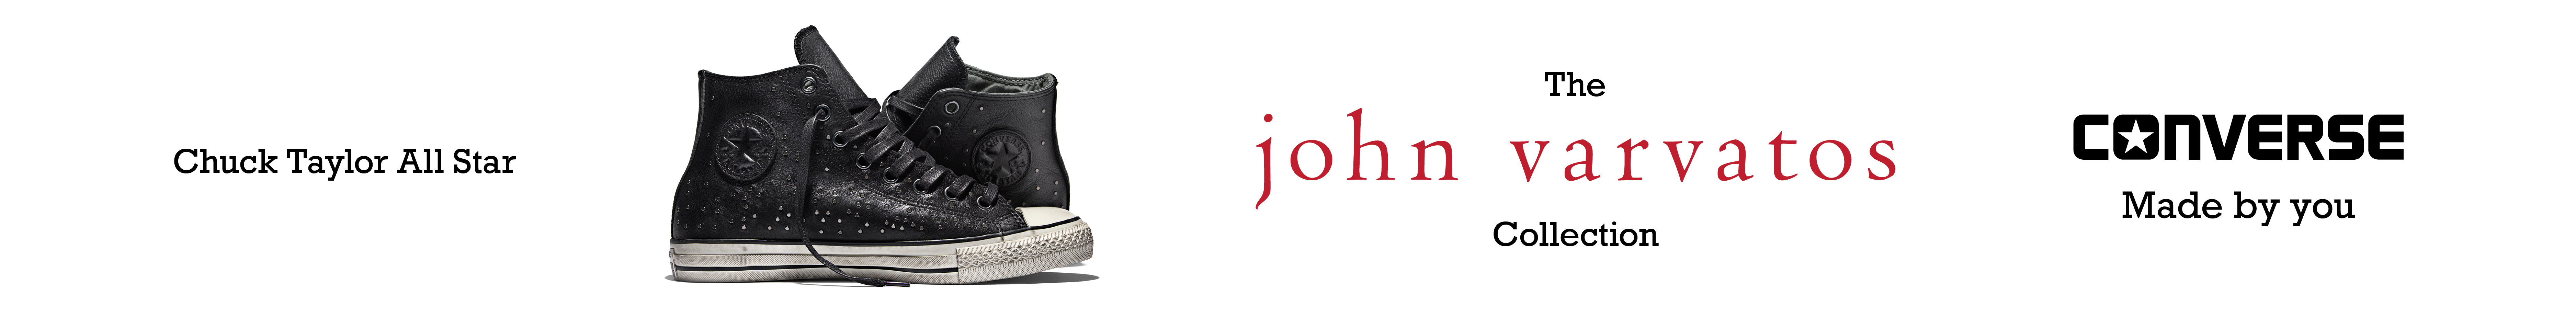 John varvatos Logos.